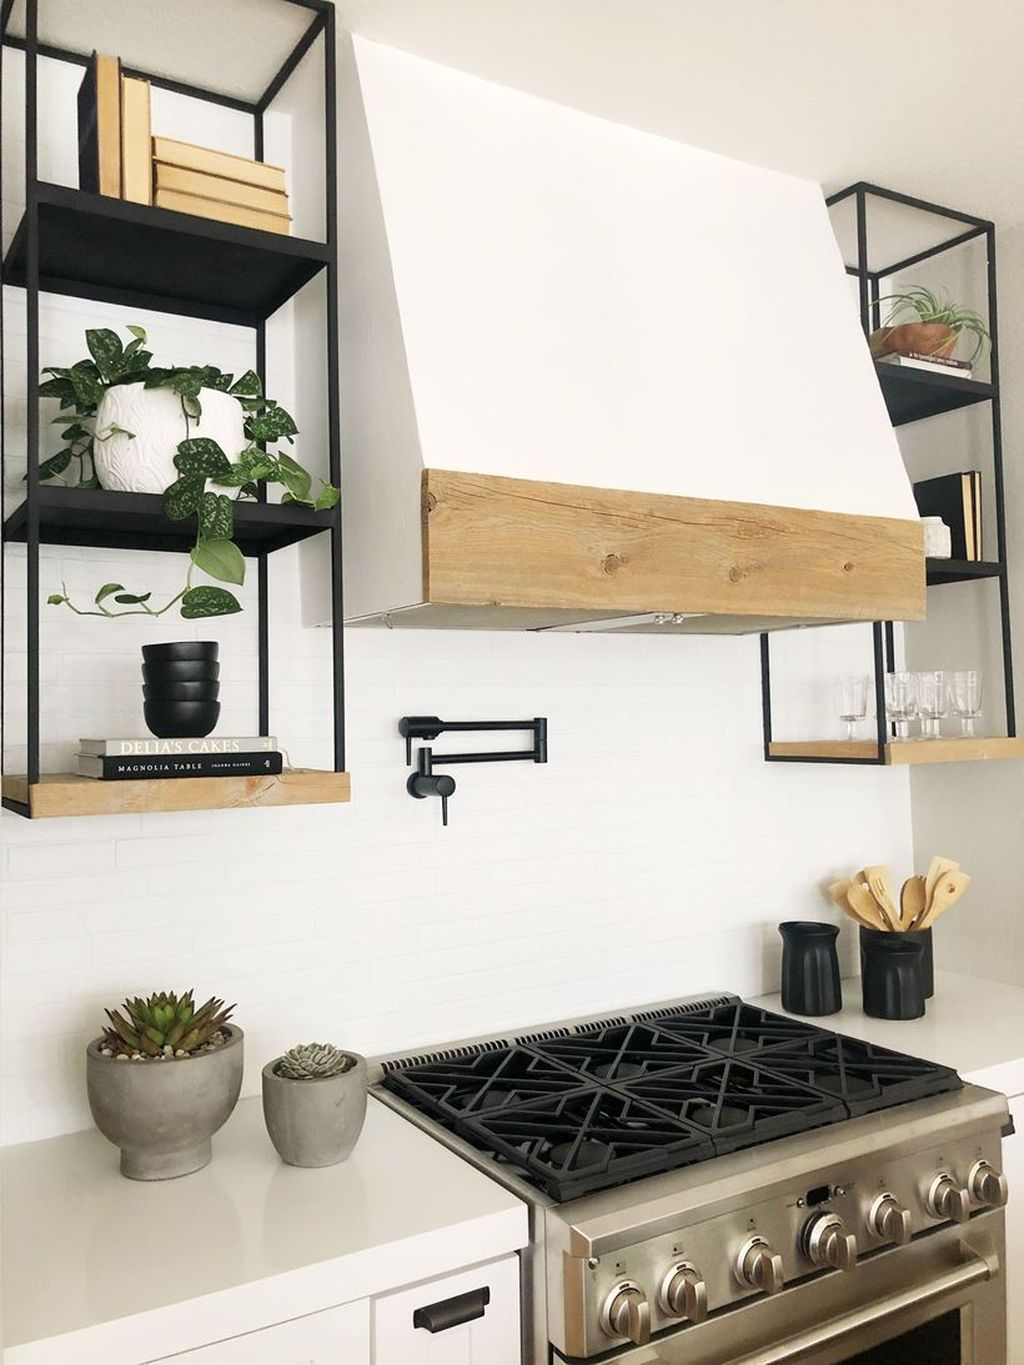 Wonderful Industrial Kitchen Shelf Design Ideas To Organize Your Kitchen36